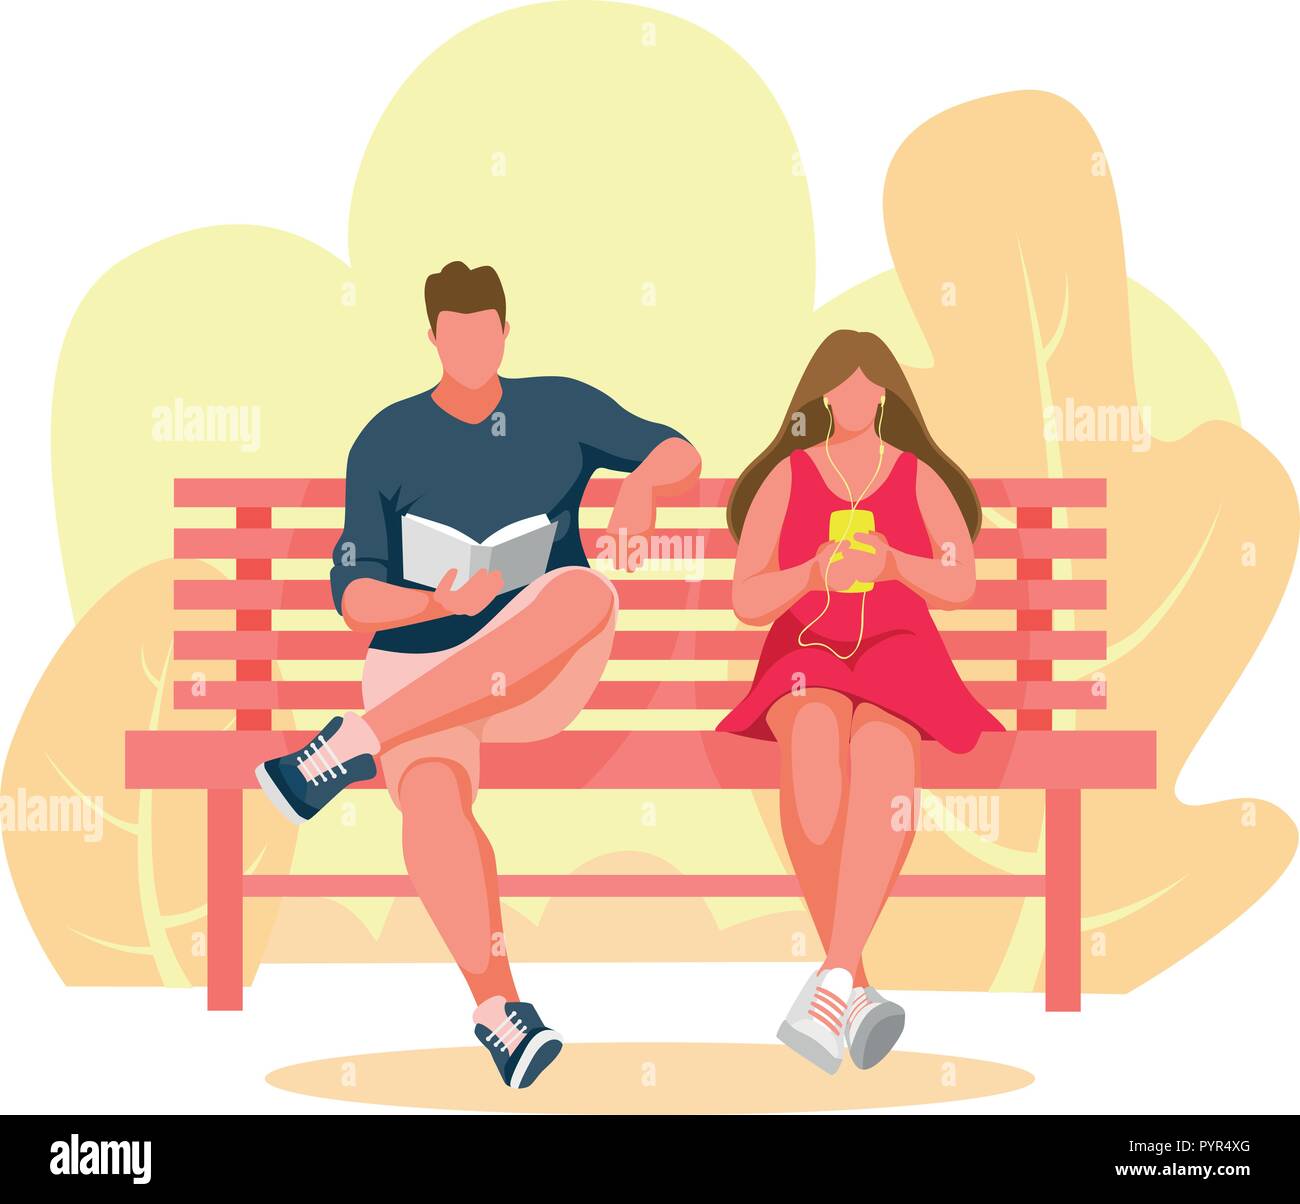 L'homme et la jeune fille assise sur un banc. Femme à l'écoute de la musique. Man reading book. Banc de parc Vector Illustration Illustration de Vecteur